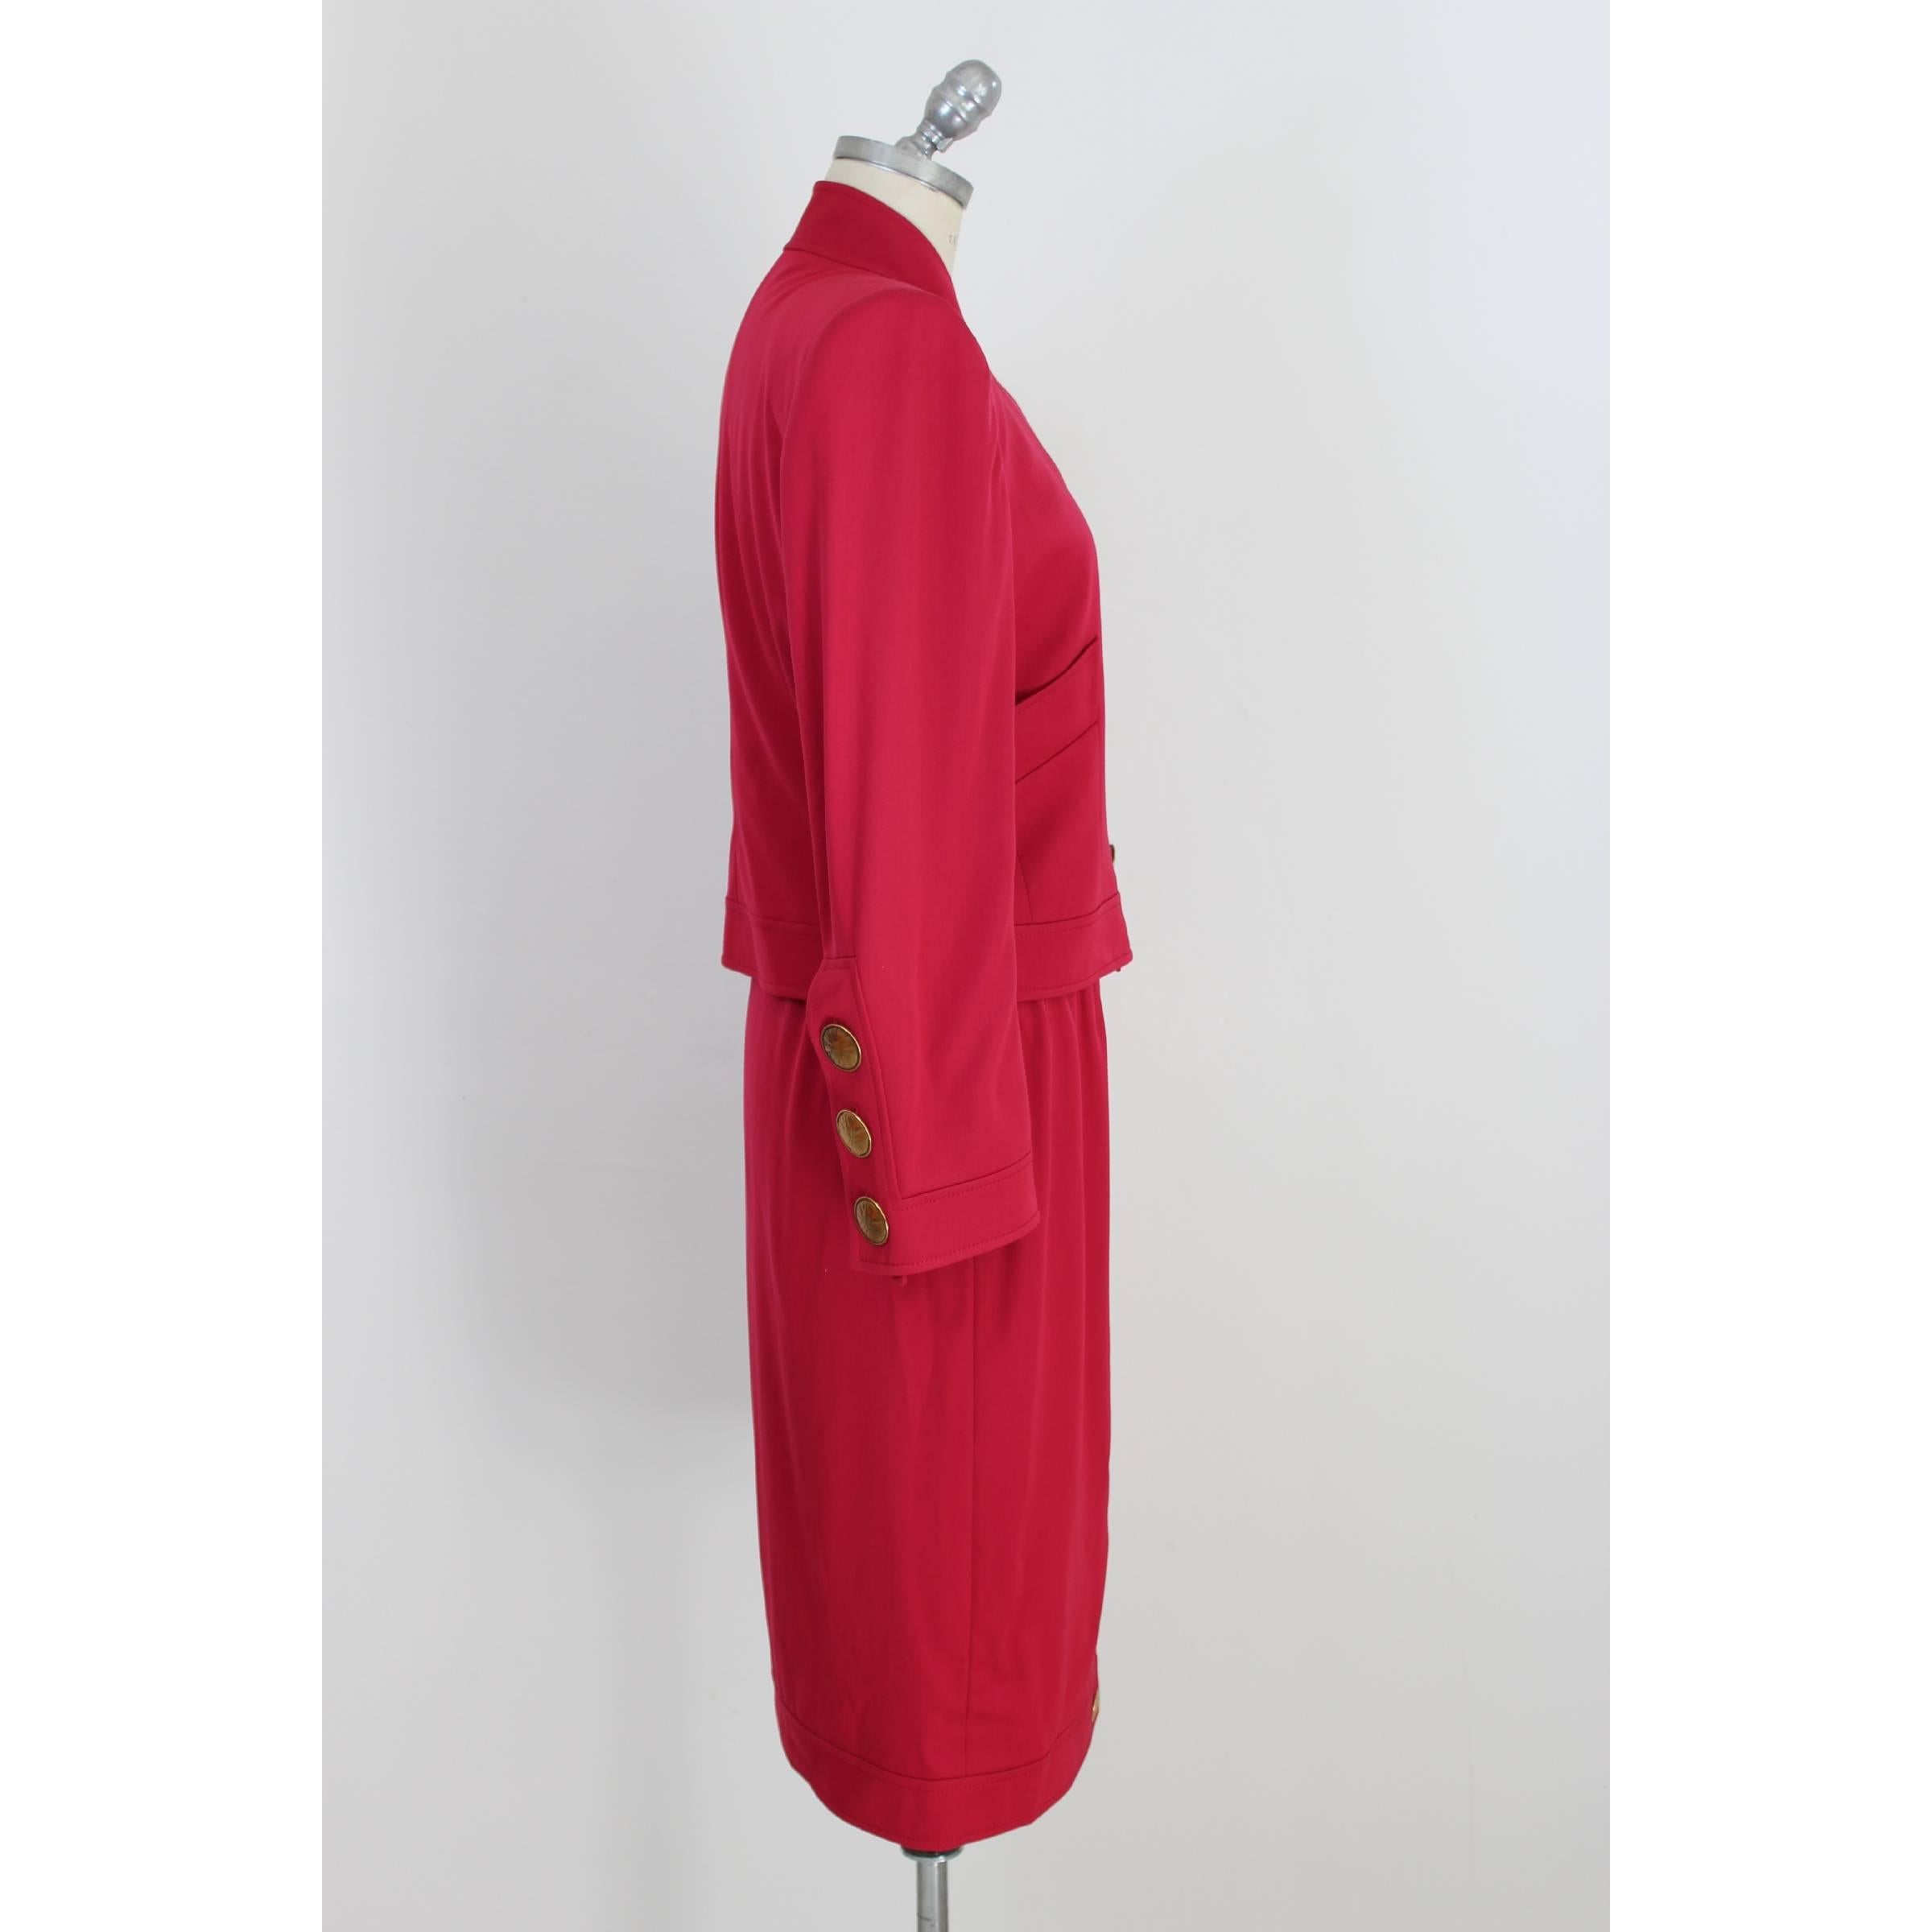 Red Mario Borsato Suit Skirt Fuchsia Wool Italian Jacket Tailleur, 1980s  For Sale